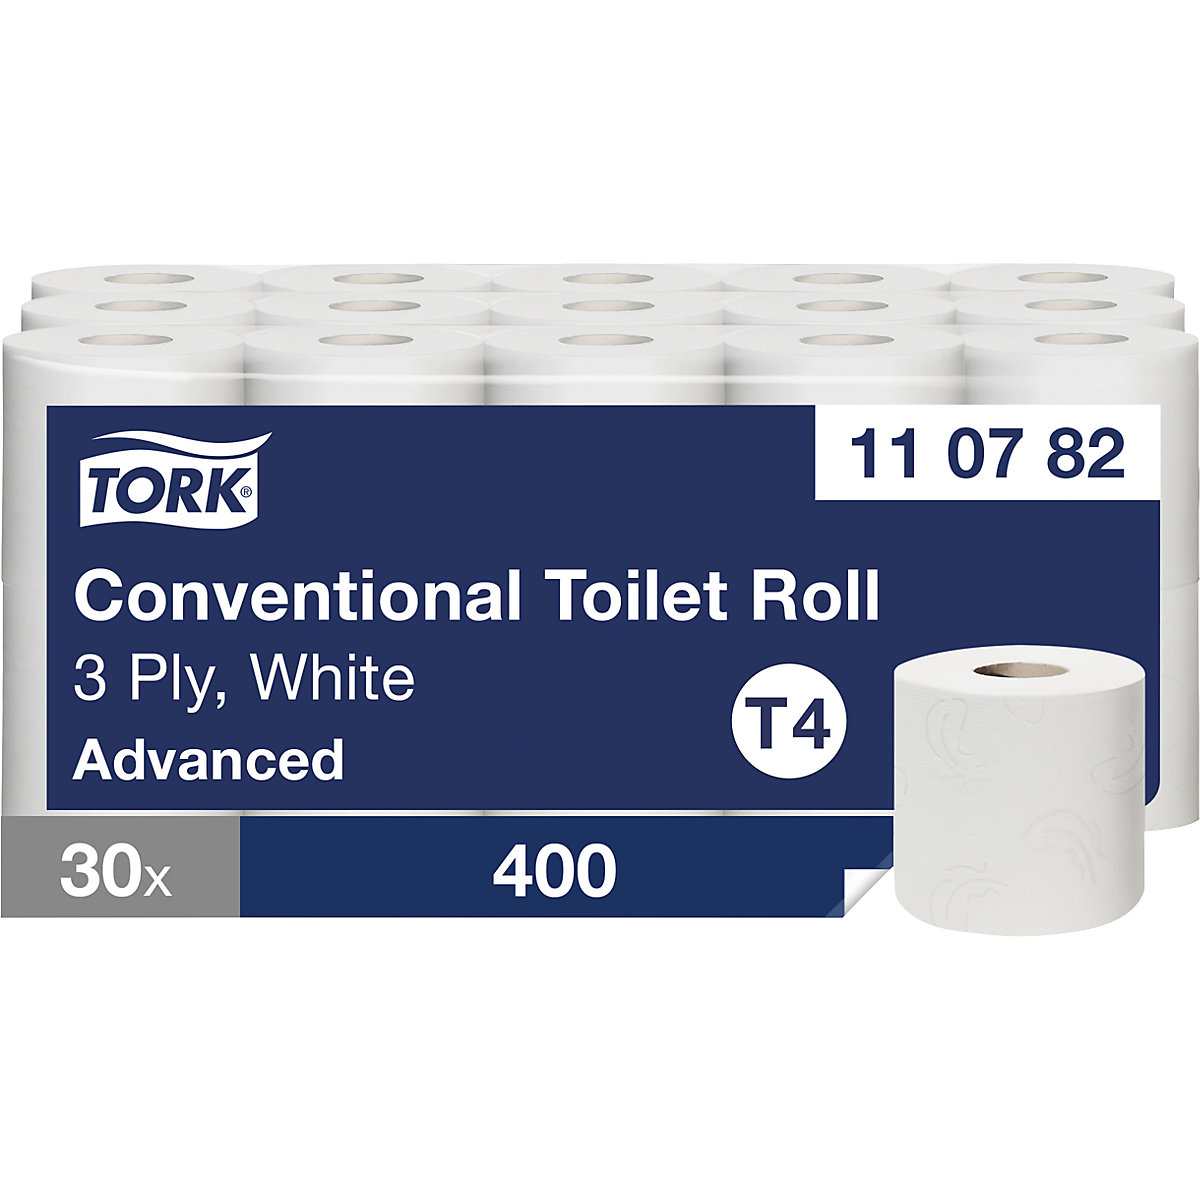 Toaletni papir v majhnih rolah, gospodinjska rola – TORK (Slika izdelka 4)-3